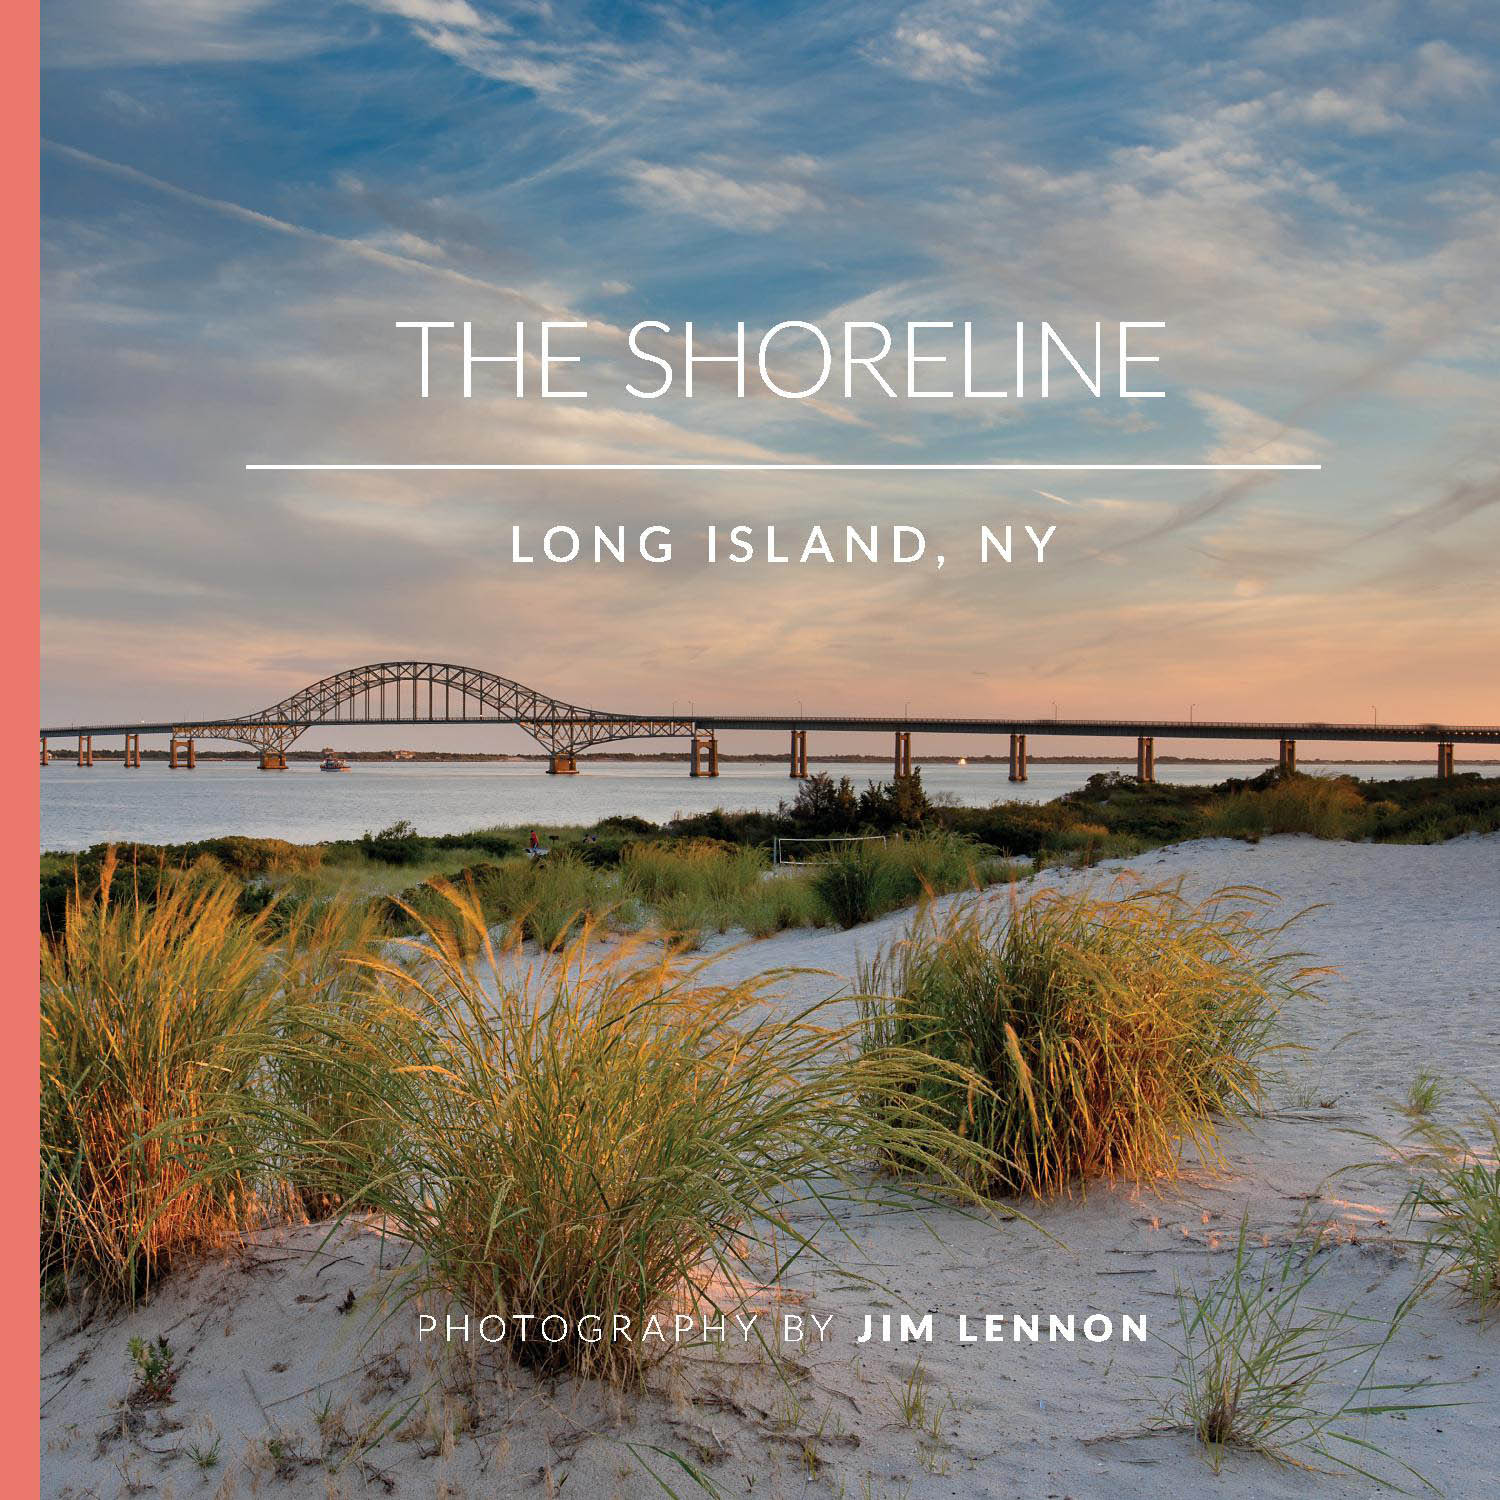 "The shore" by Jim Lennon